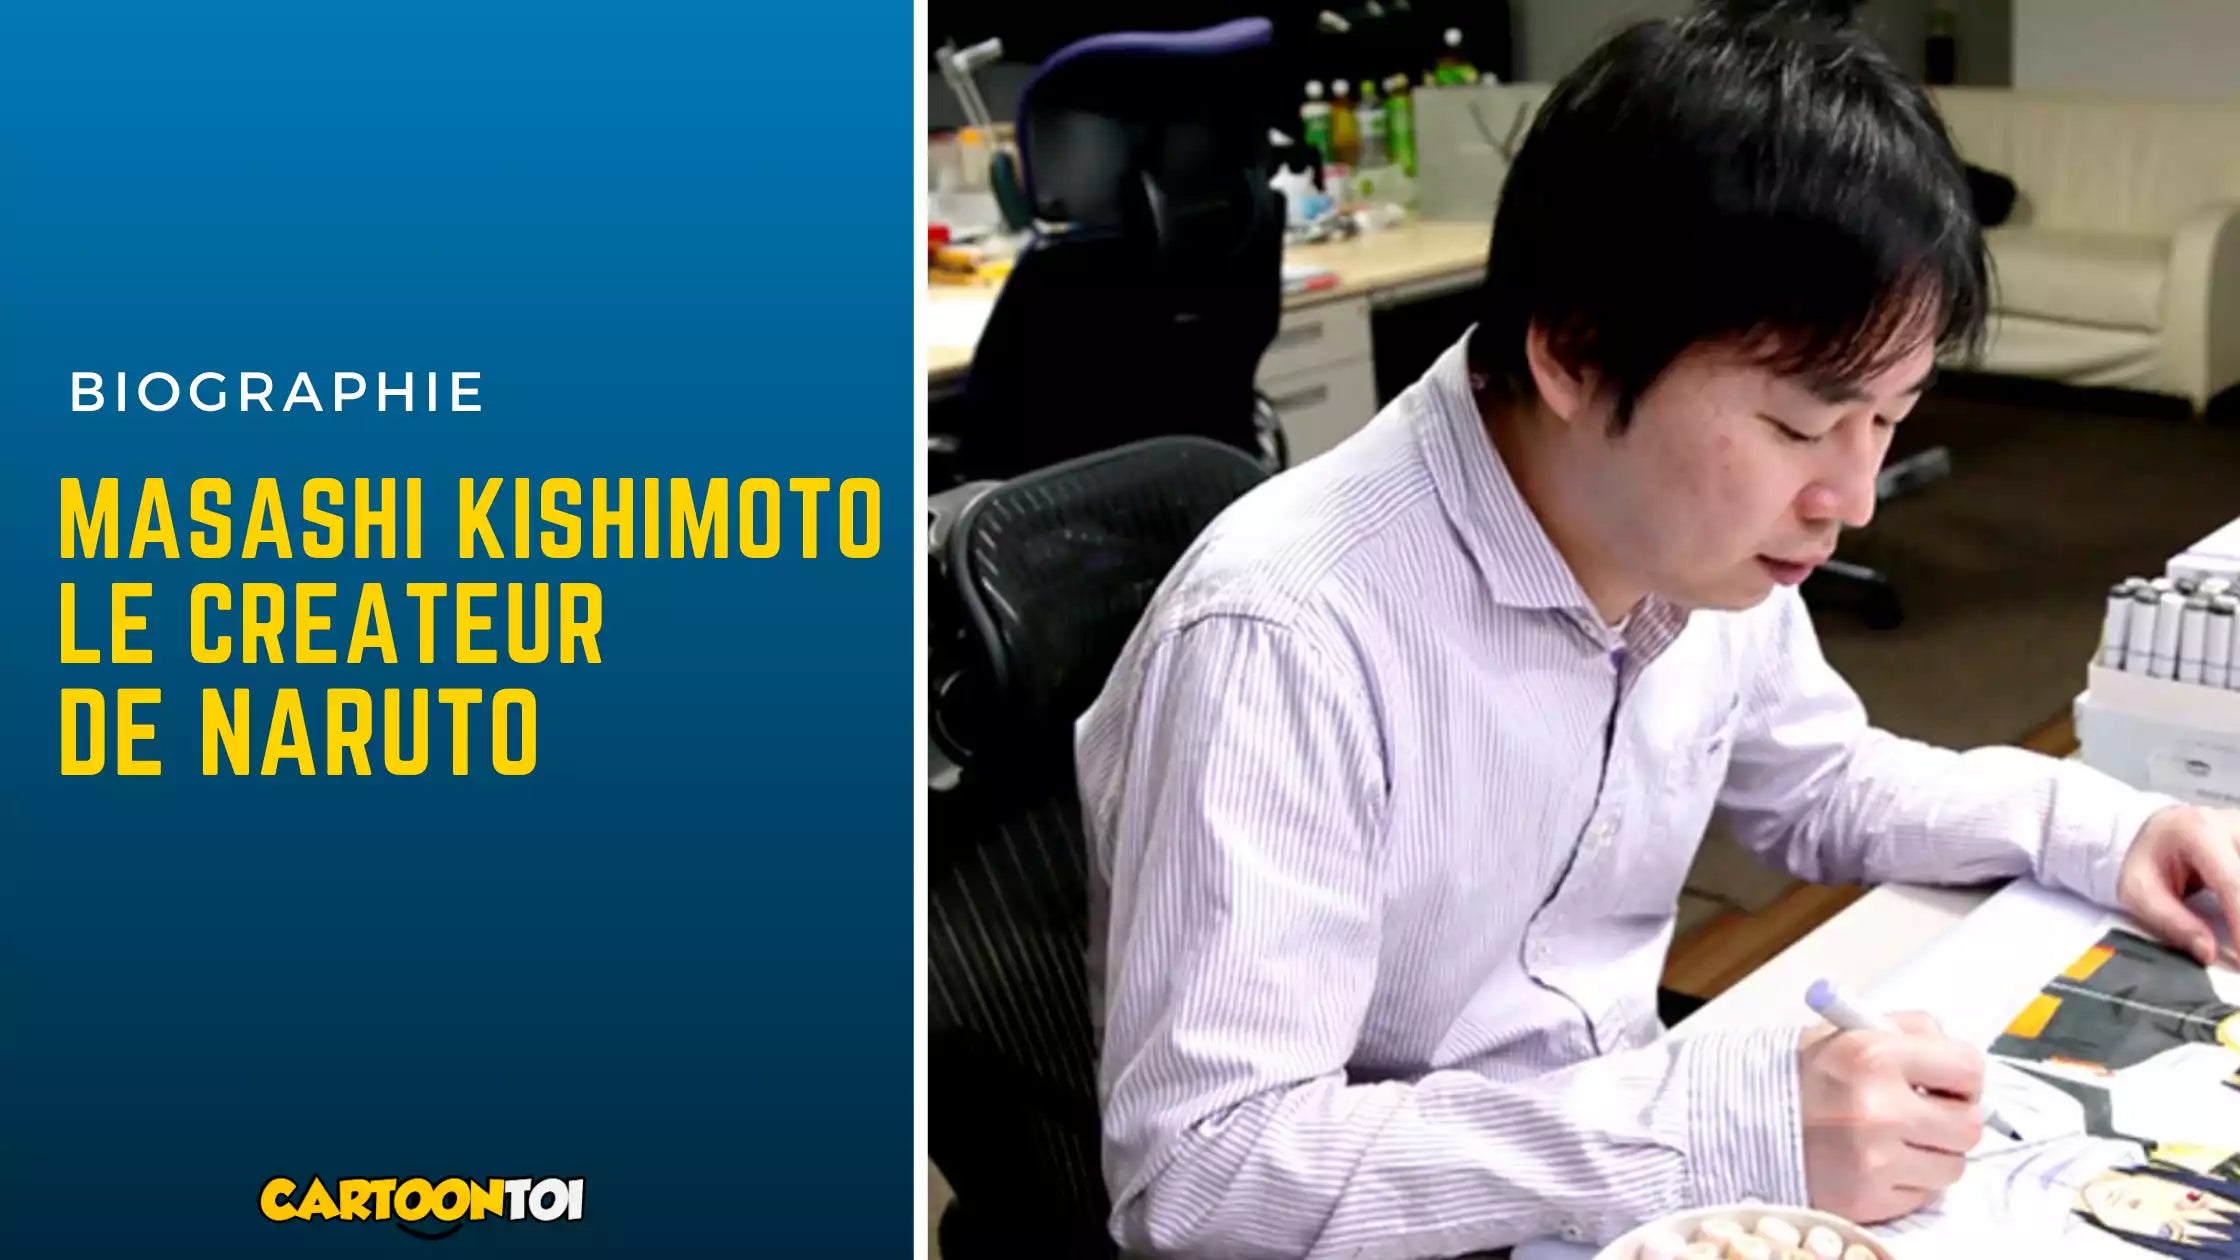 Masashi Kishimoto le createur de Naruto